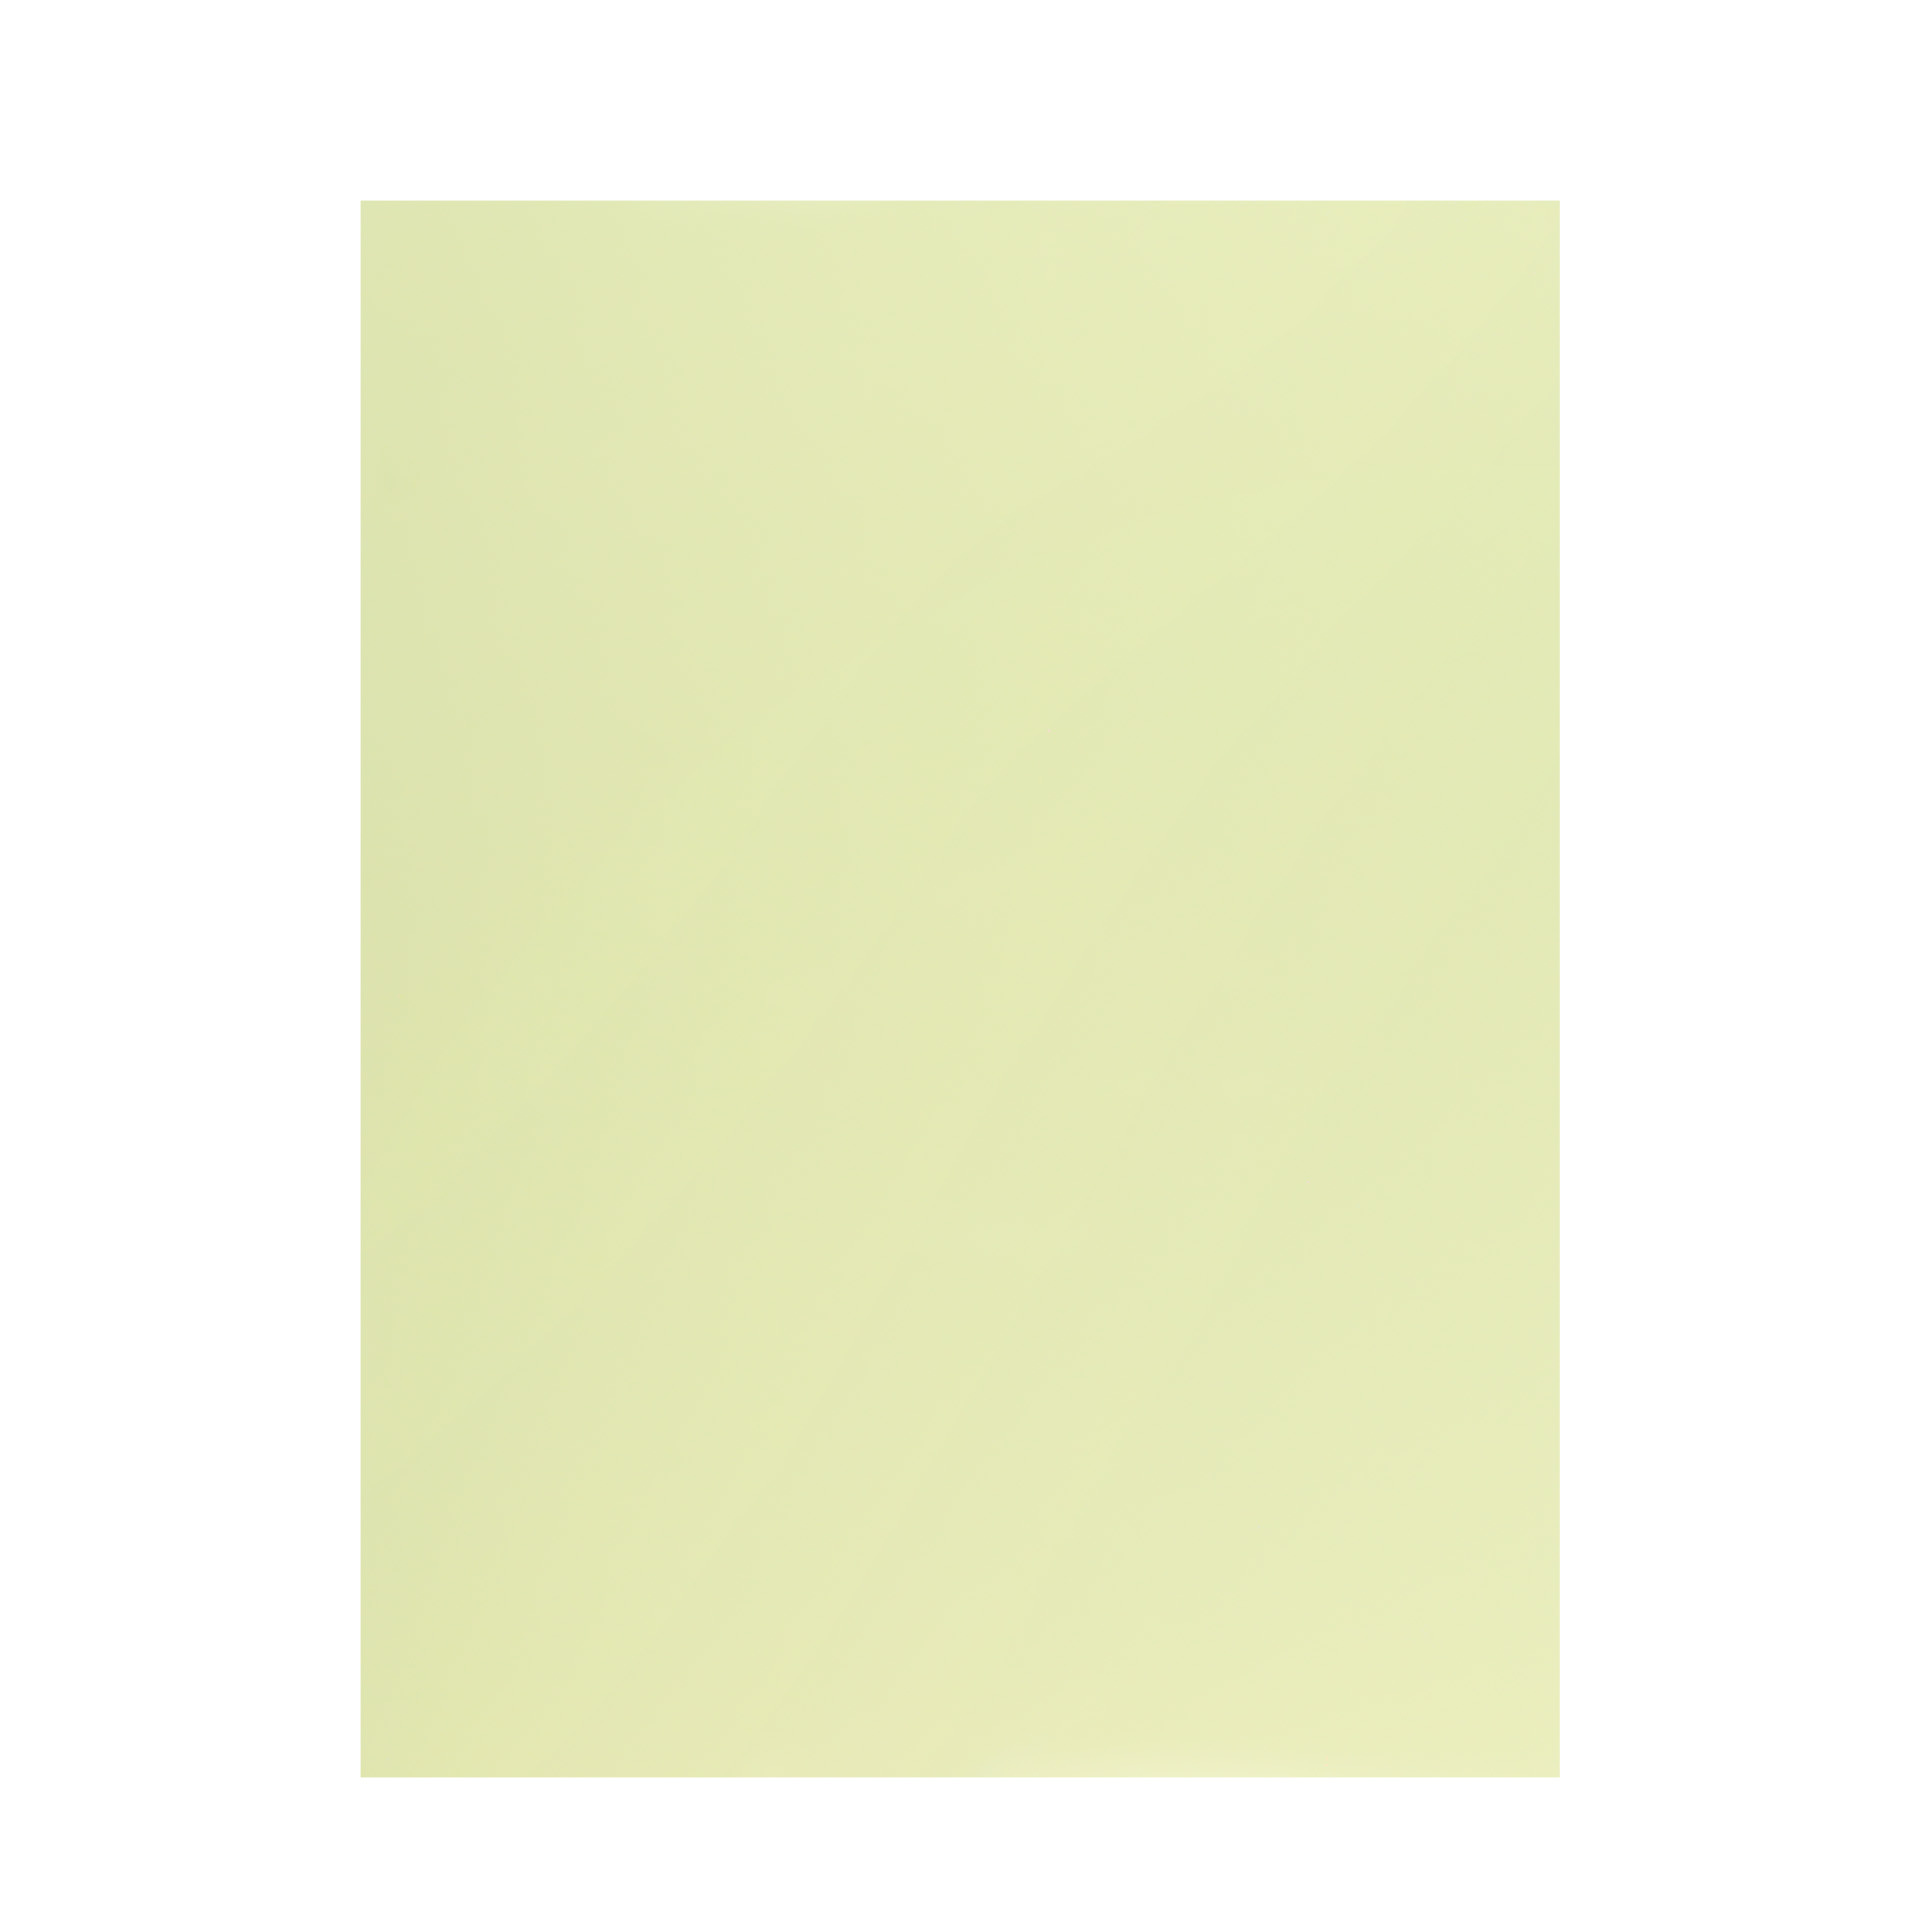 Pickguard Blank - 435 x 290 mm (17.1 x 11.4") - Mint Green